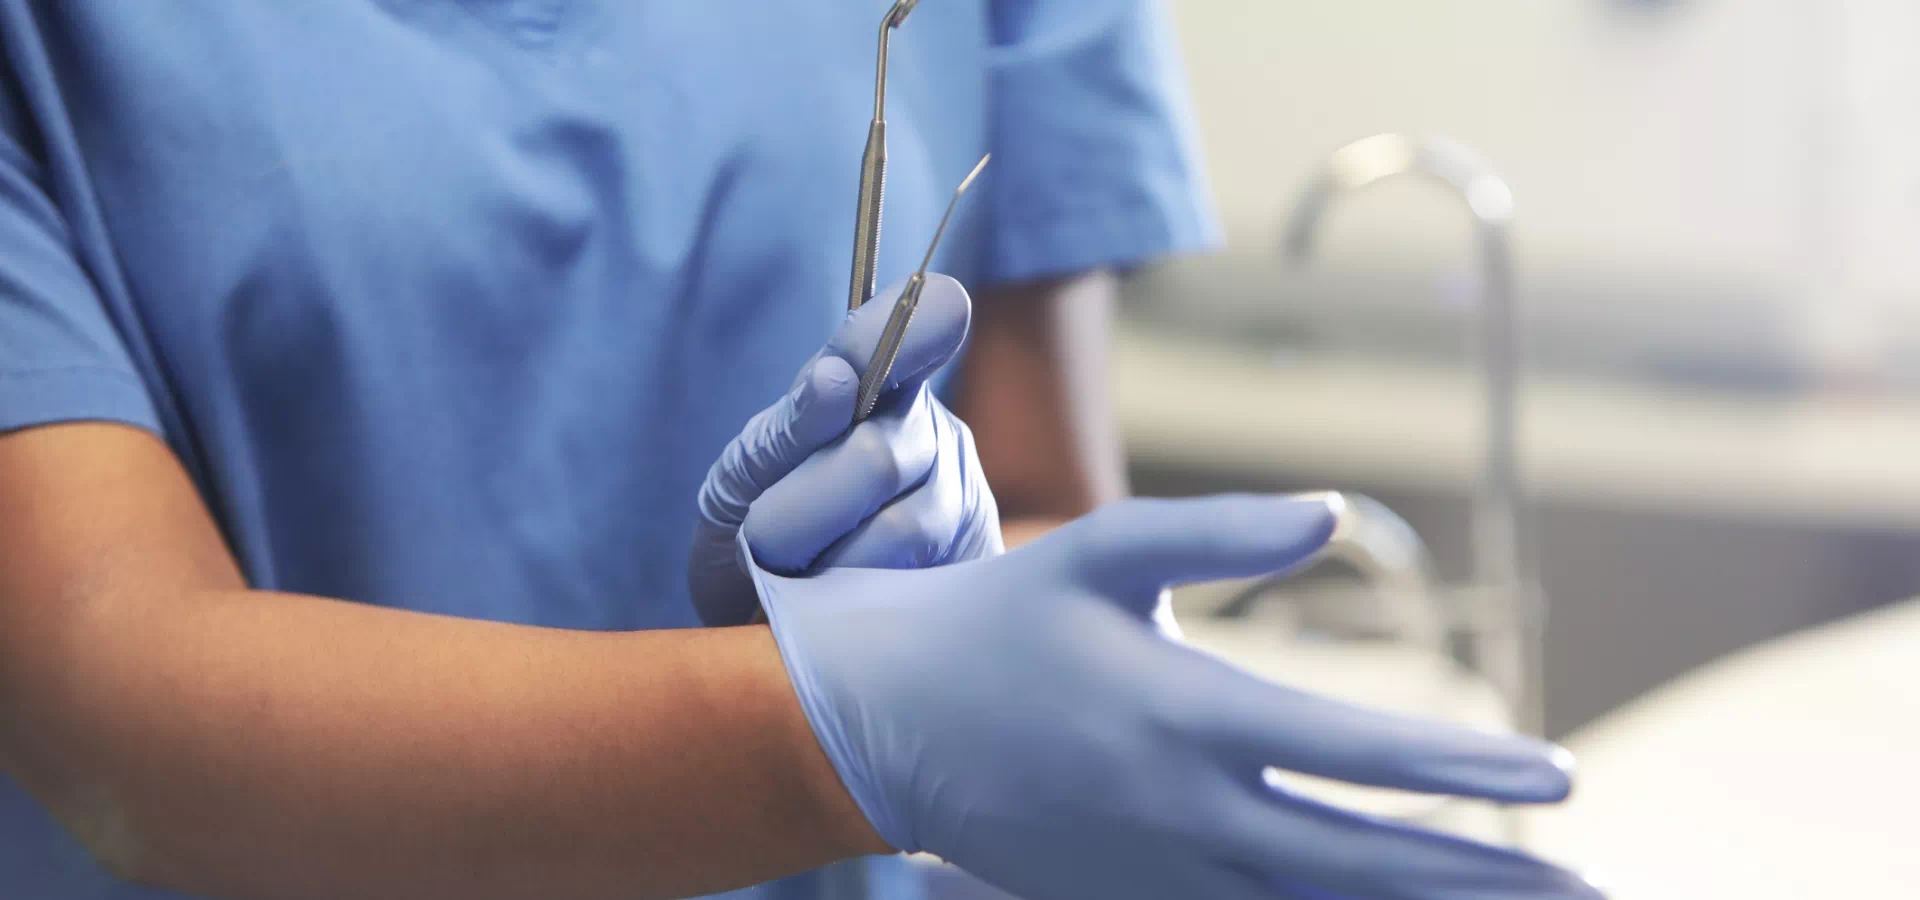 stomatolog zakładający rękawiczki